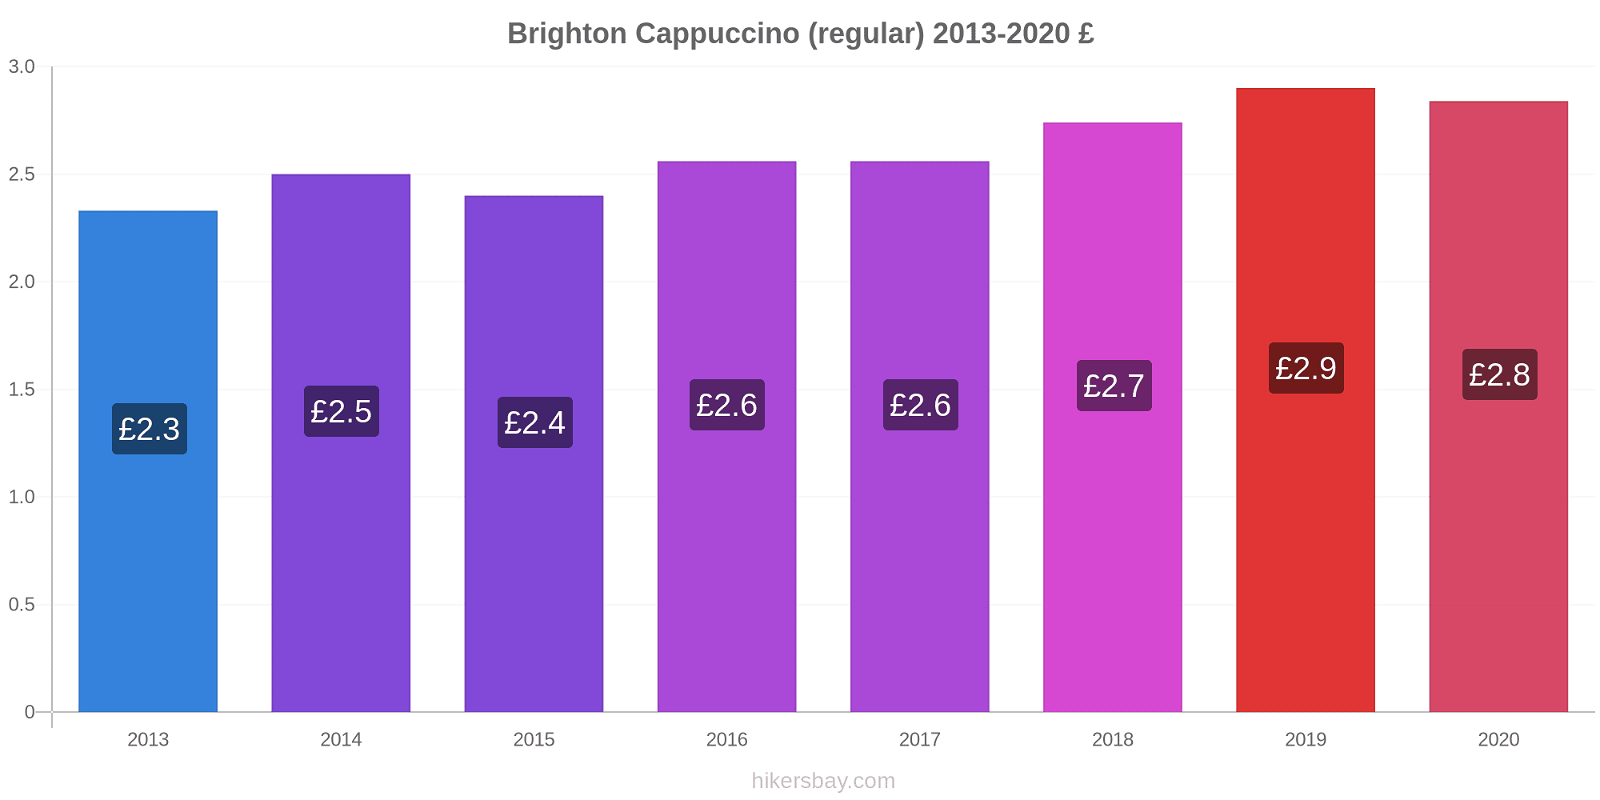 Brighton variação de preço Capuccino (regular) hikersbay.com